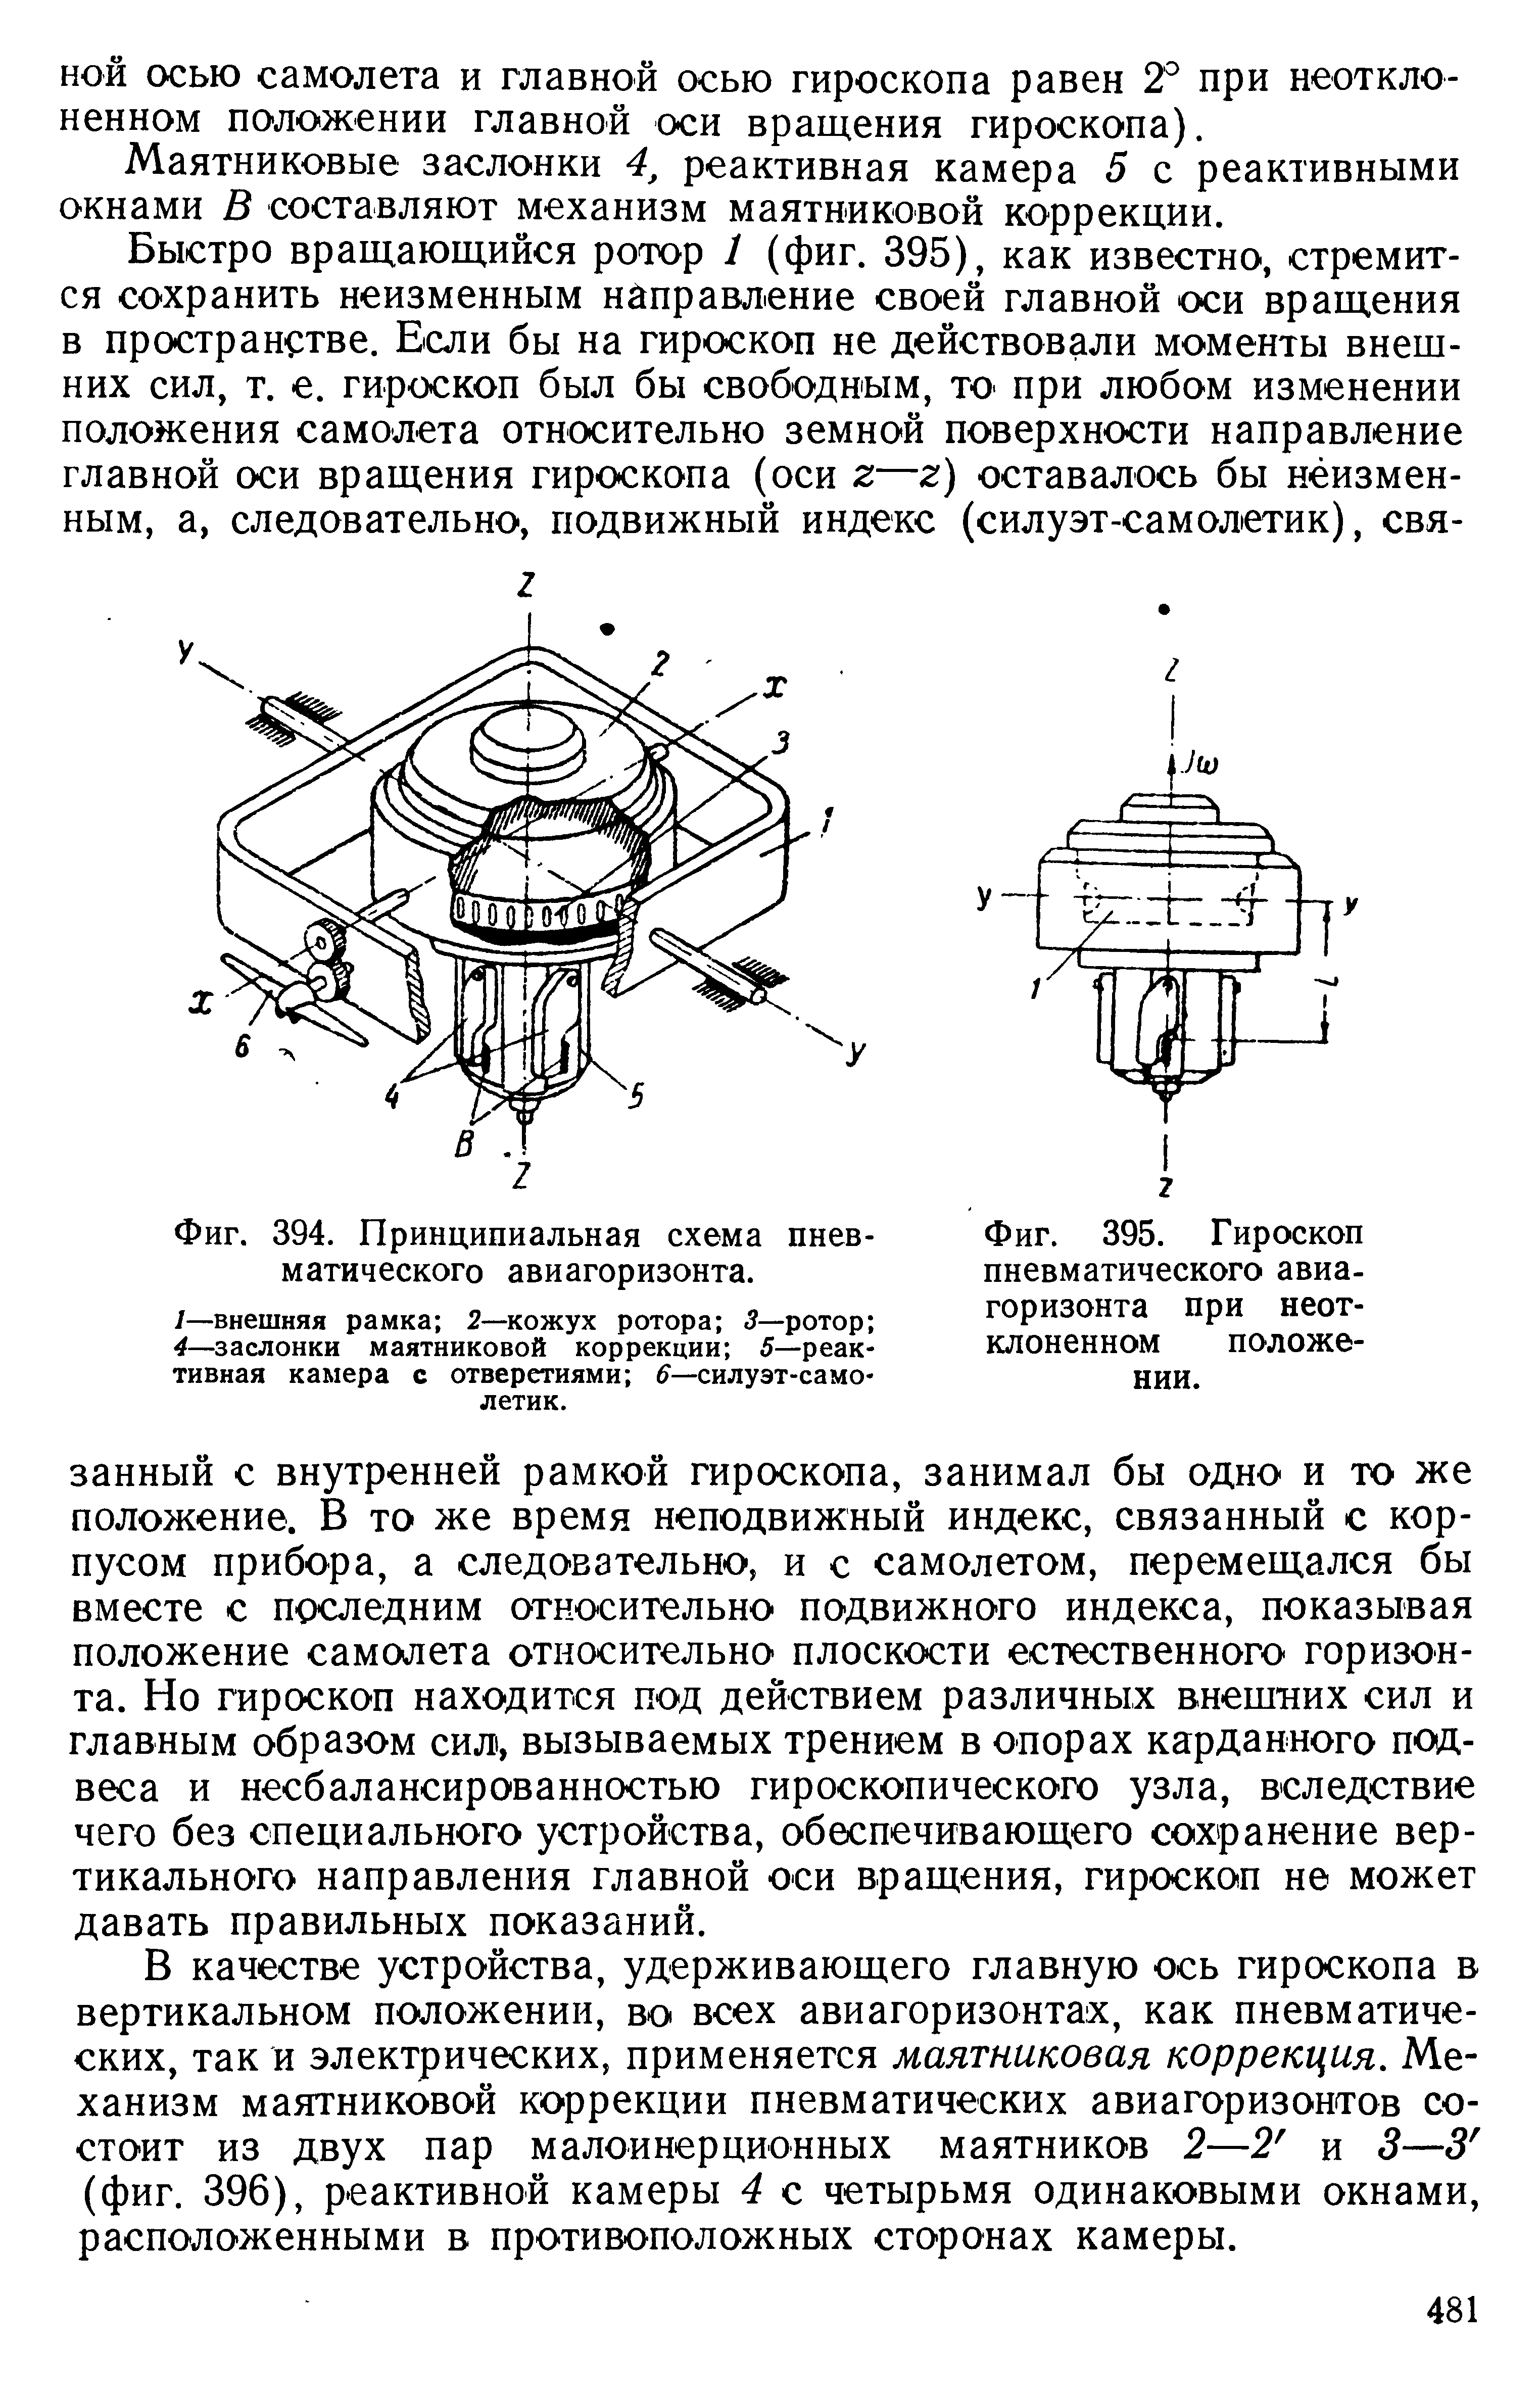 Фиг. 395. Гироскоп пневматического авиагоризонта при неот-клоненном положении.
